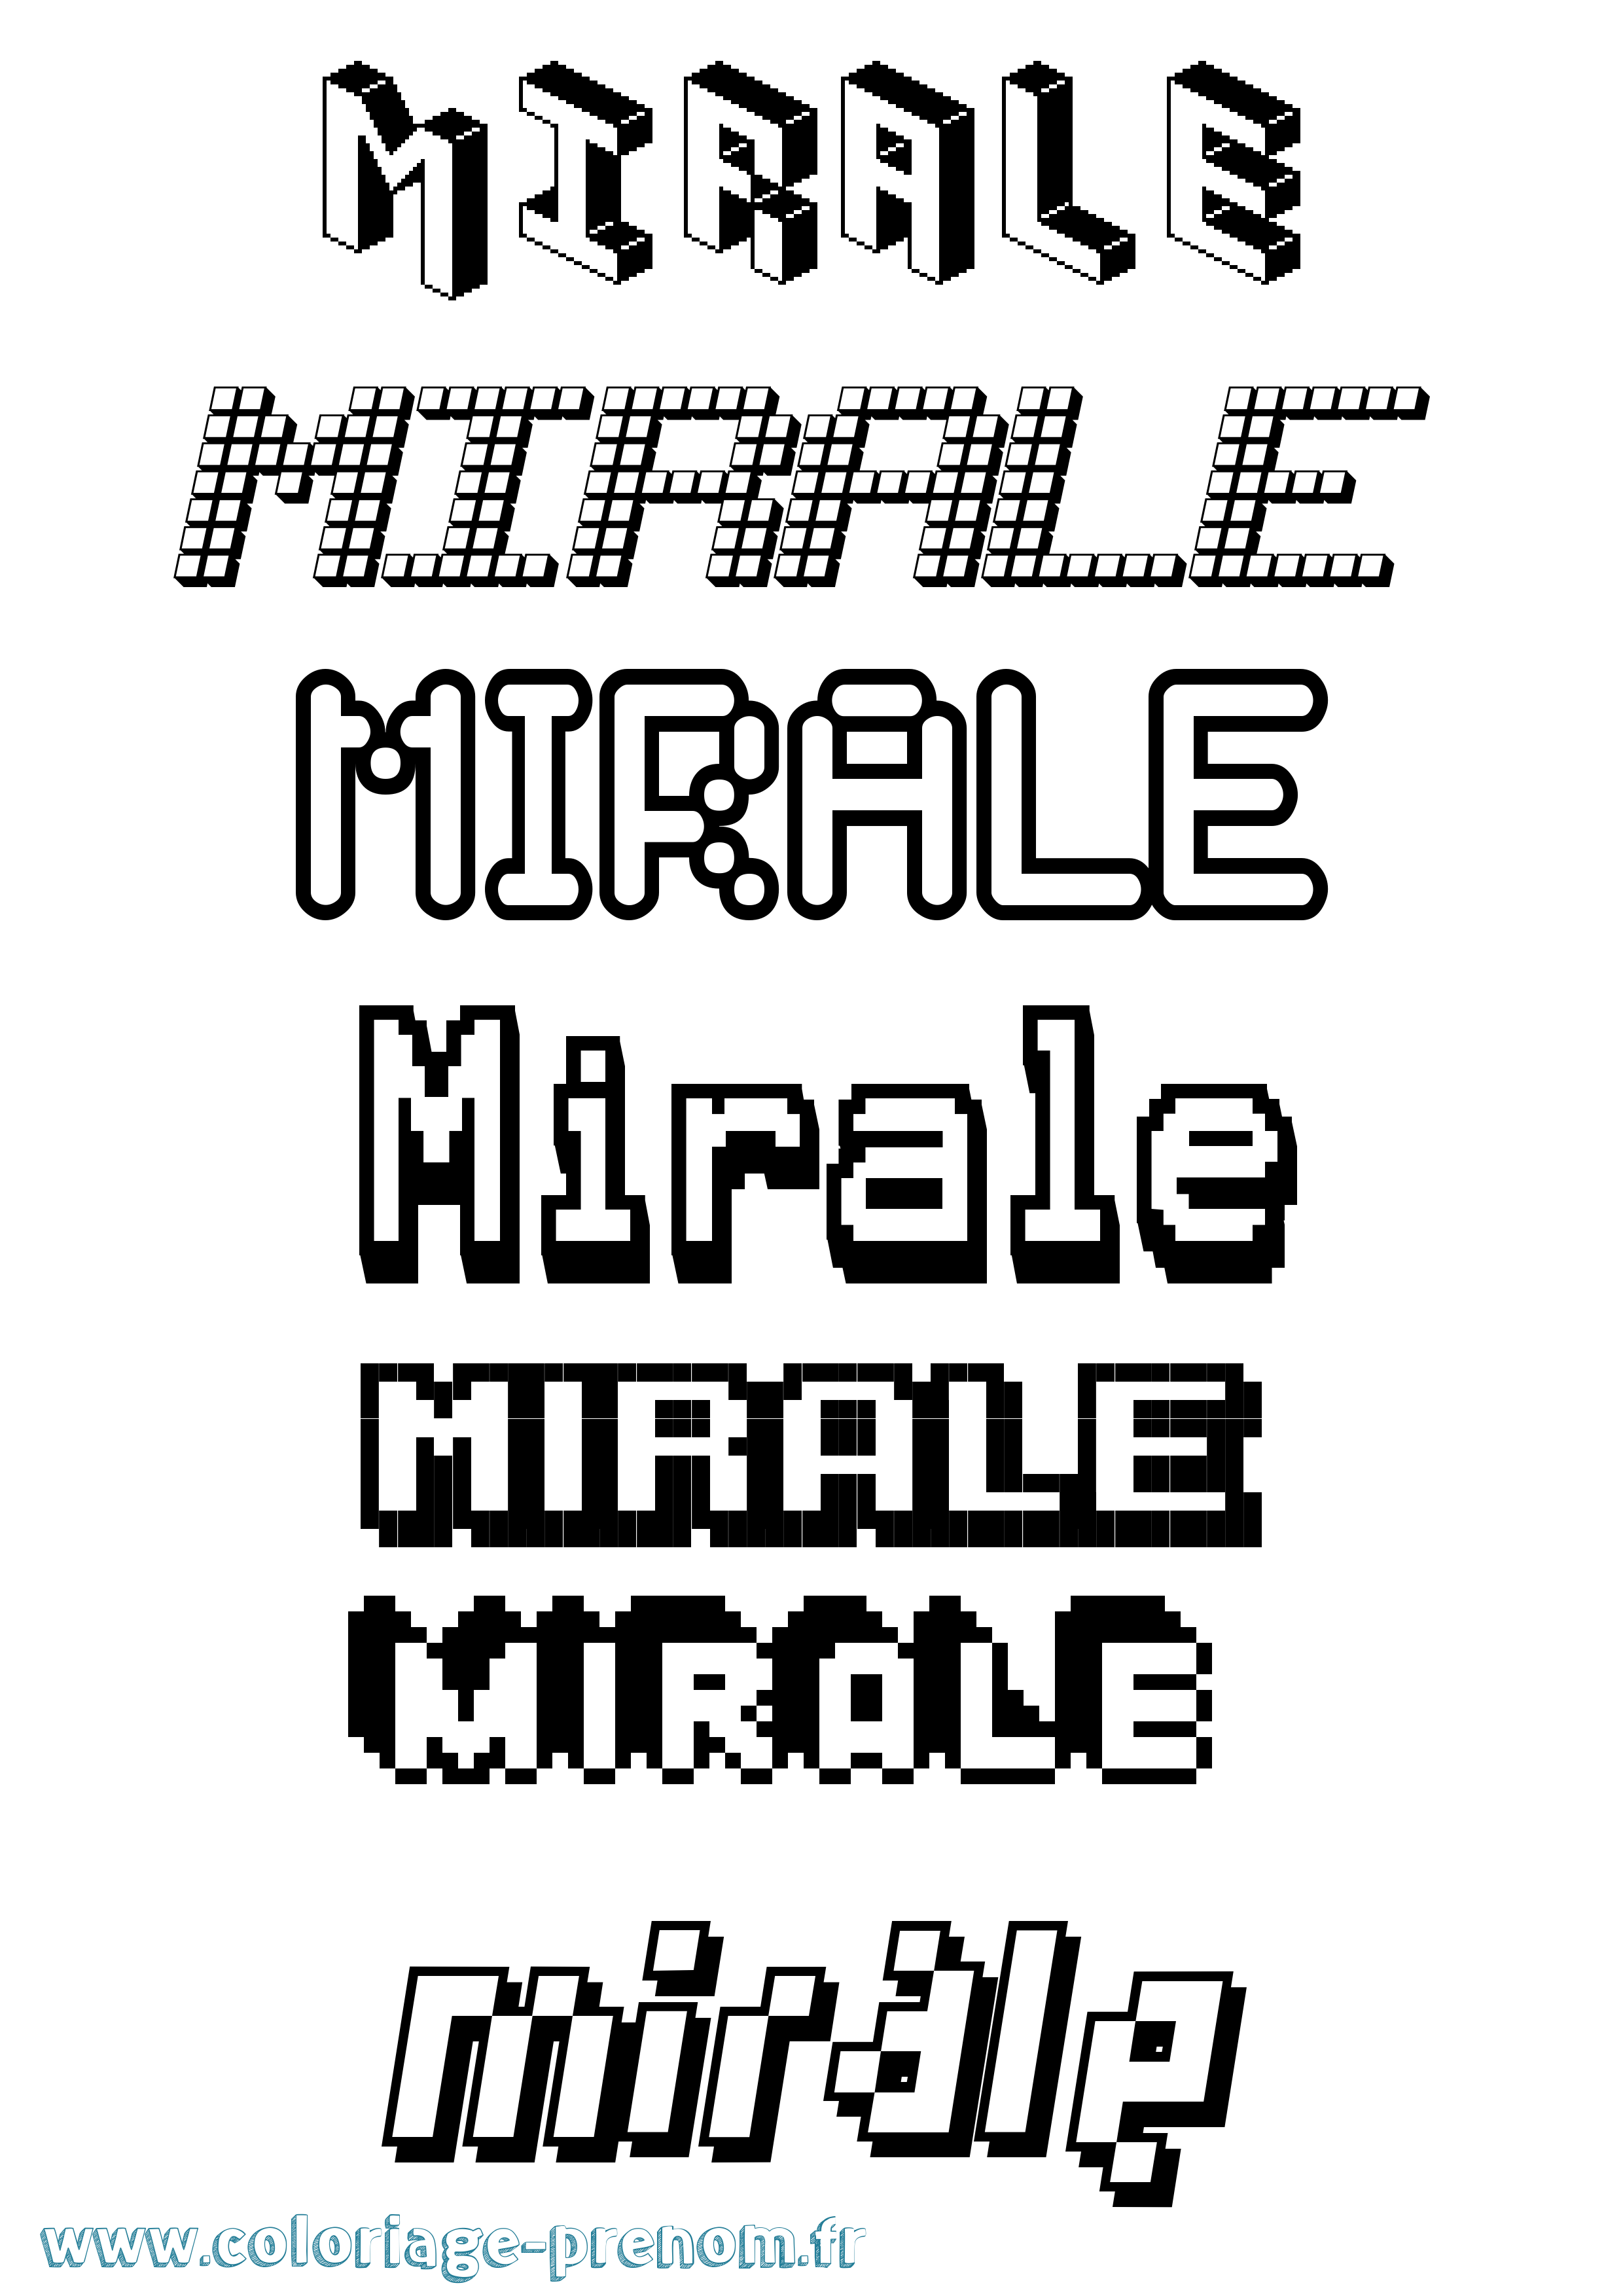 Coloriage prénom Mirale Pixel